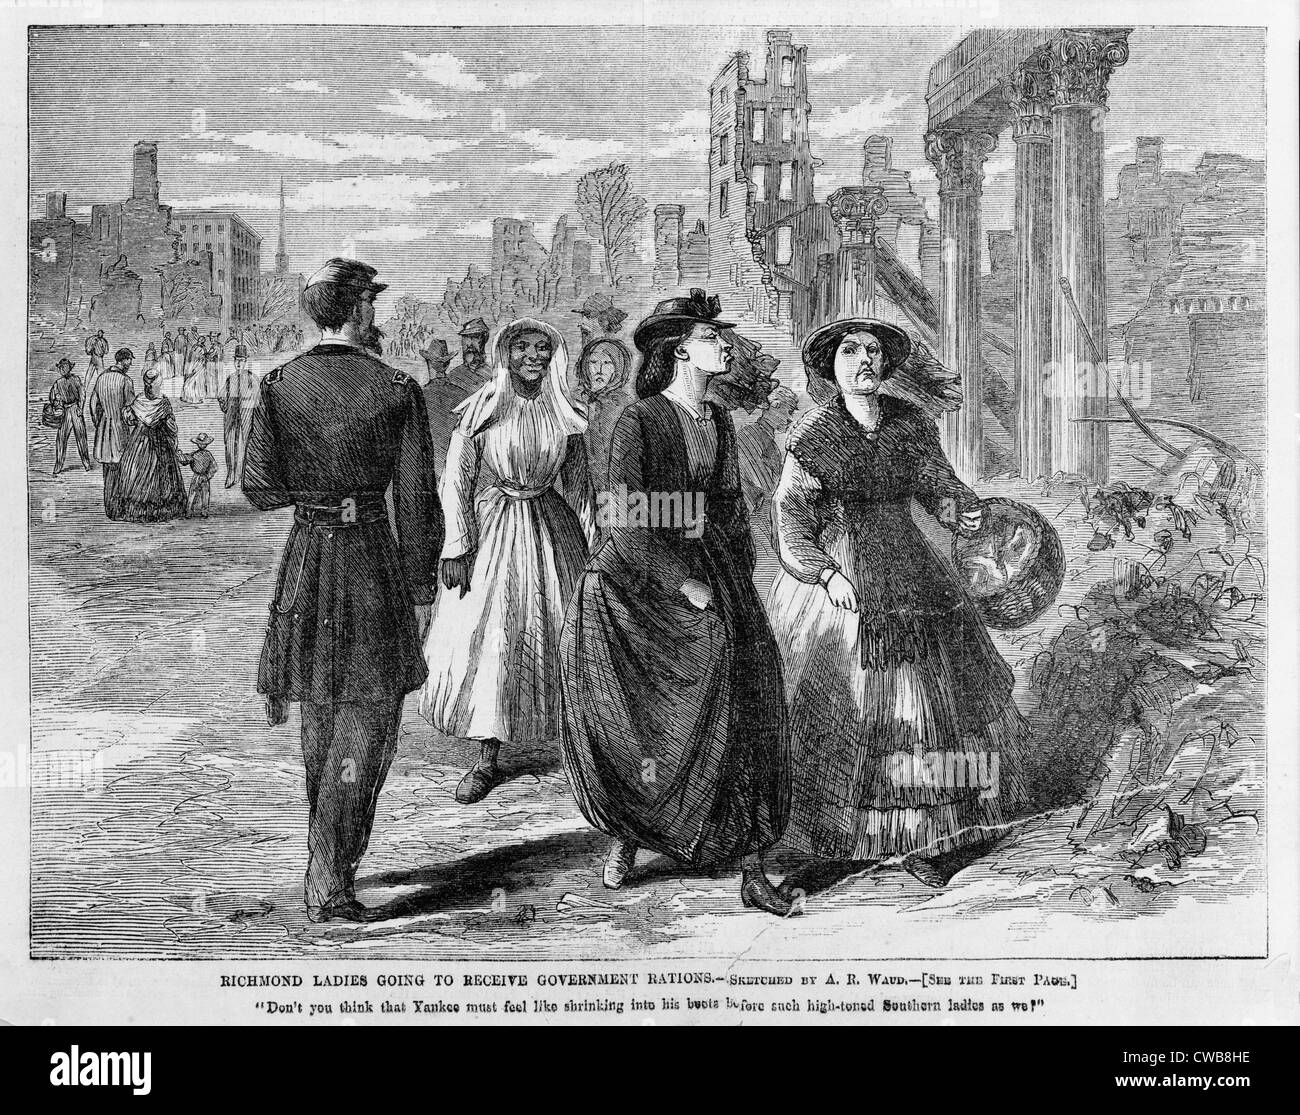 Der Bürgerkrieg. Südlichen Damen gehen durch Unionssoldaten und Ruinen von Richmond gehen Regierung Rationen zu erhalten. Stockfoto